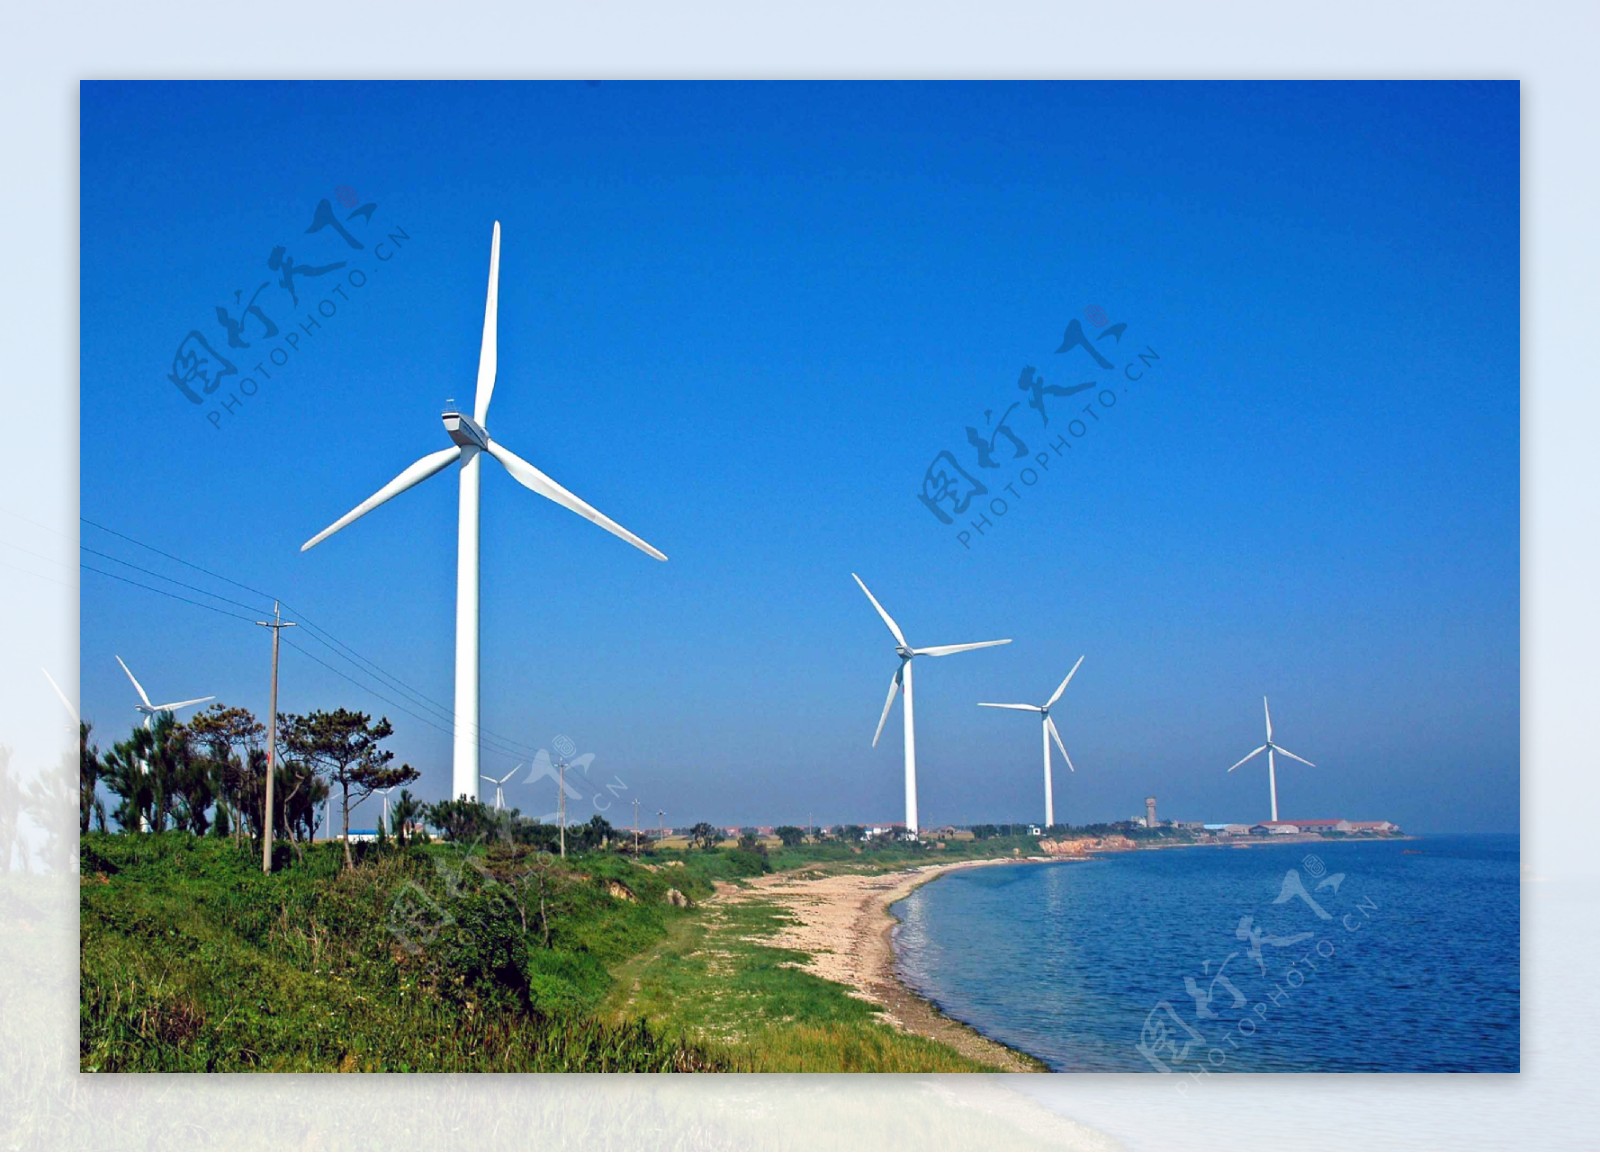 中国水利水电第八工程局有限公司 公司要闻 何家山风电项目51台风机全部吊装完成